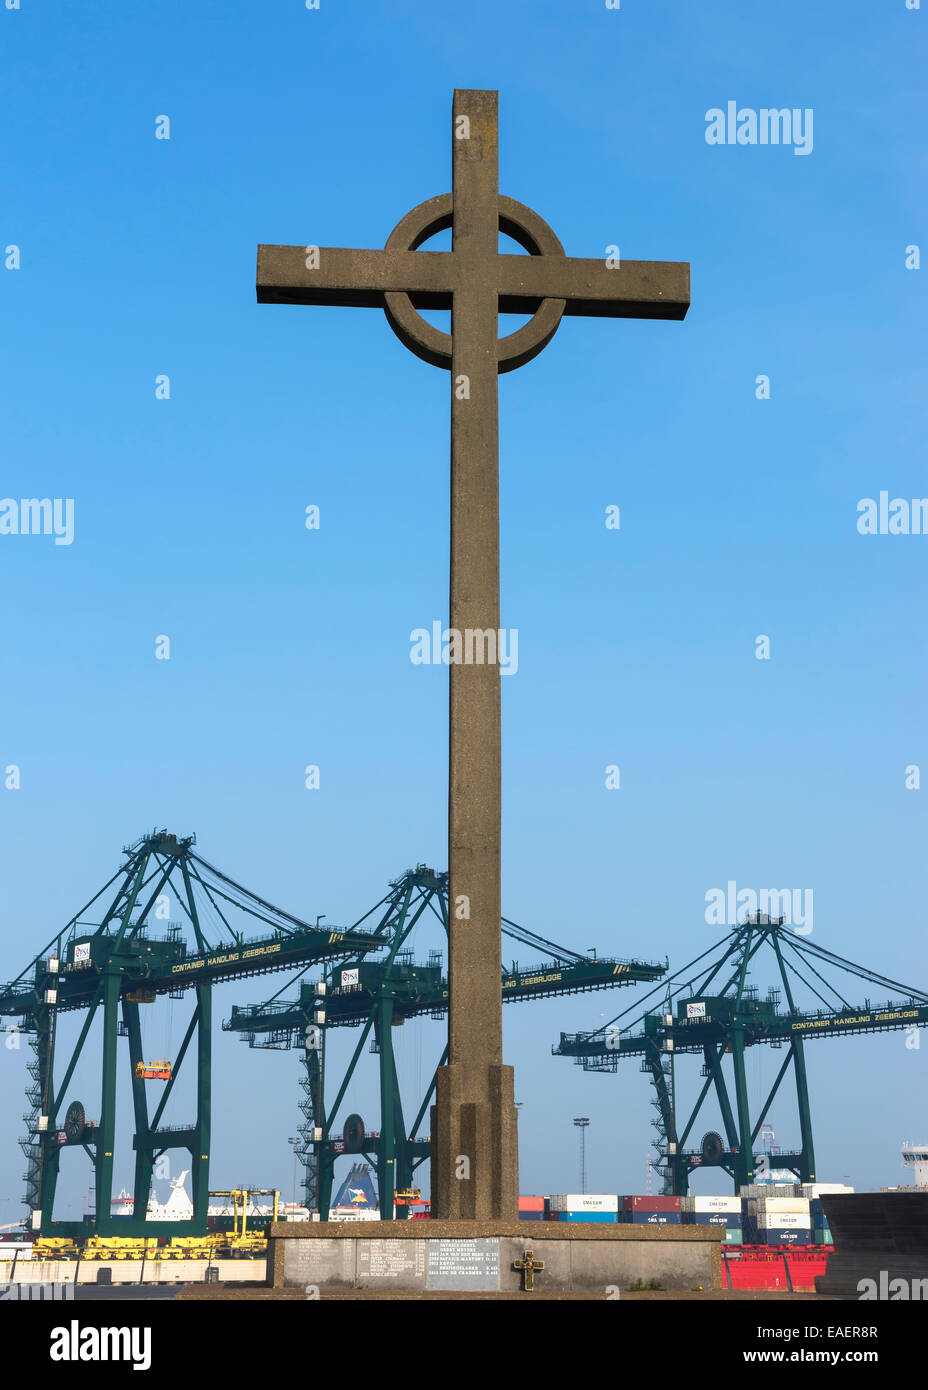 Fischermen's cross at the port of Zeebrugge-Seabruges. Stock Photo